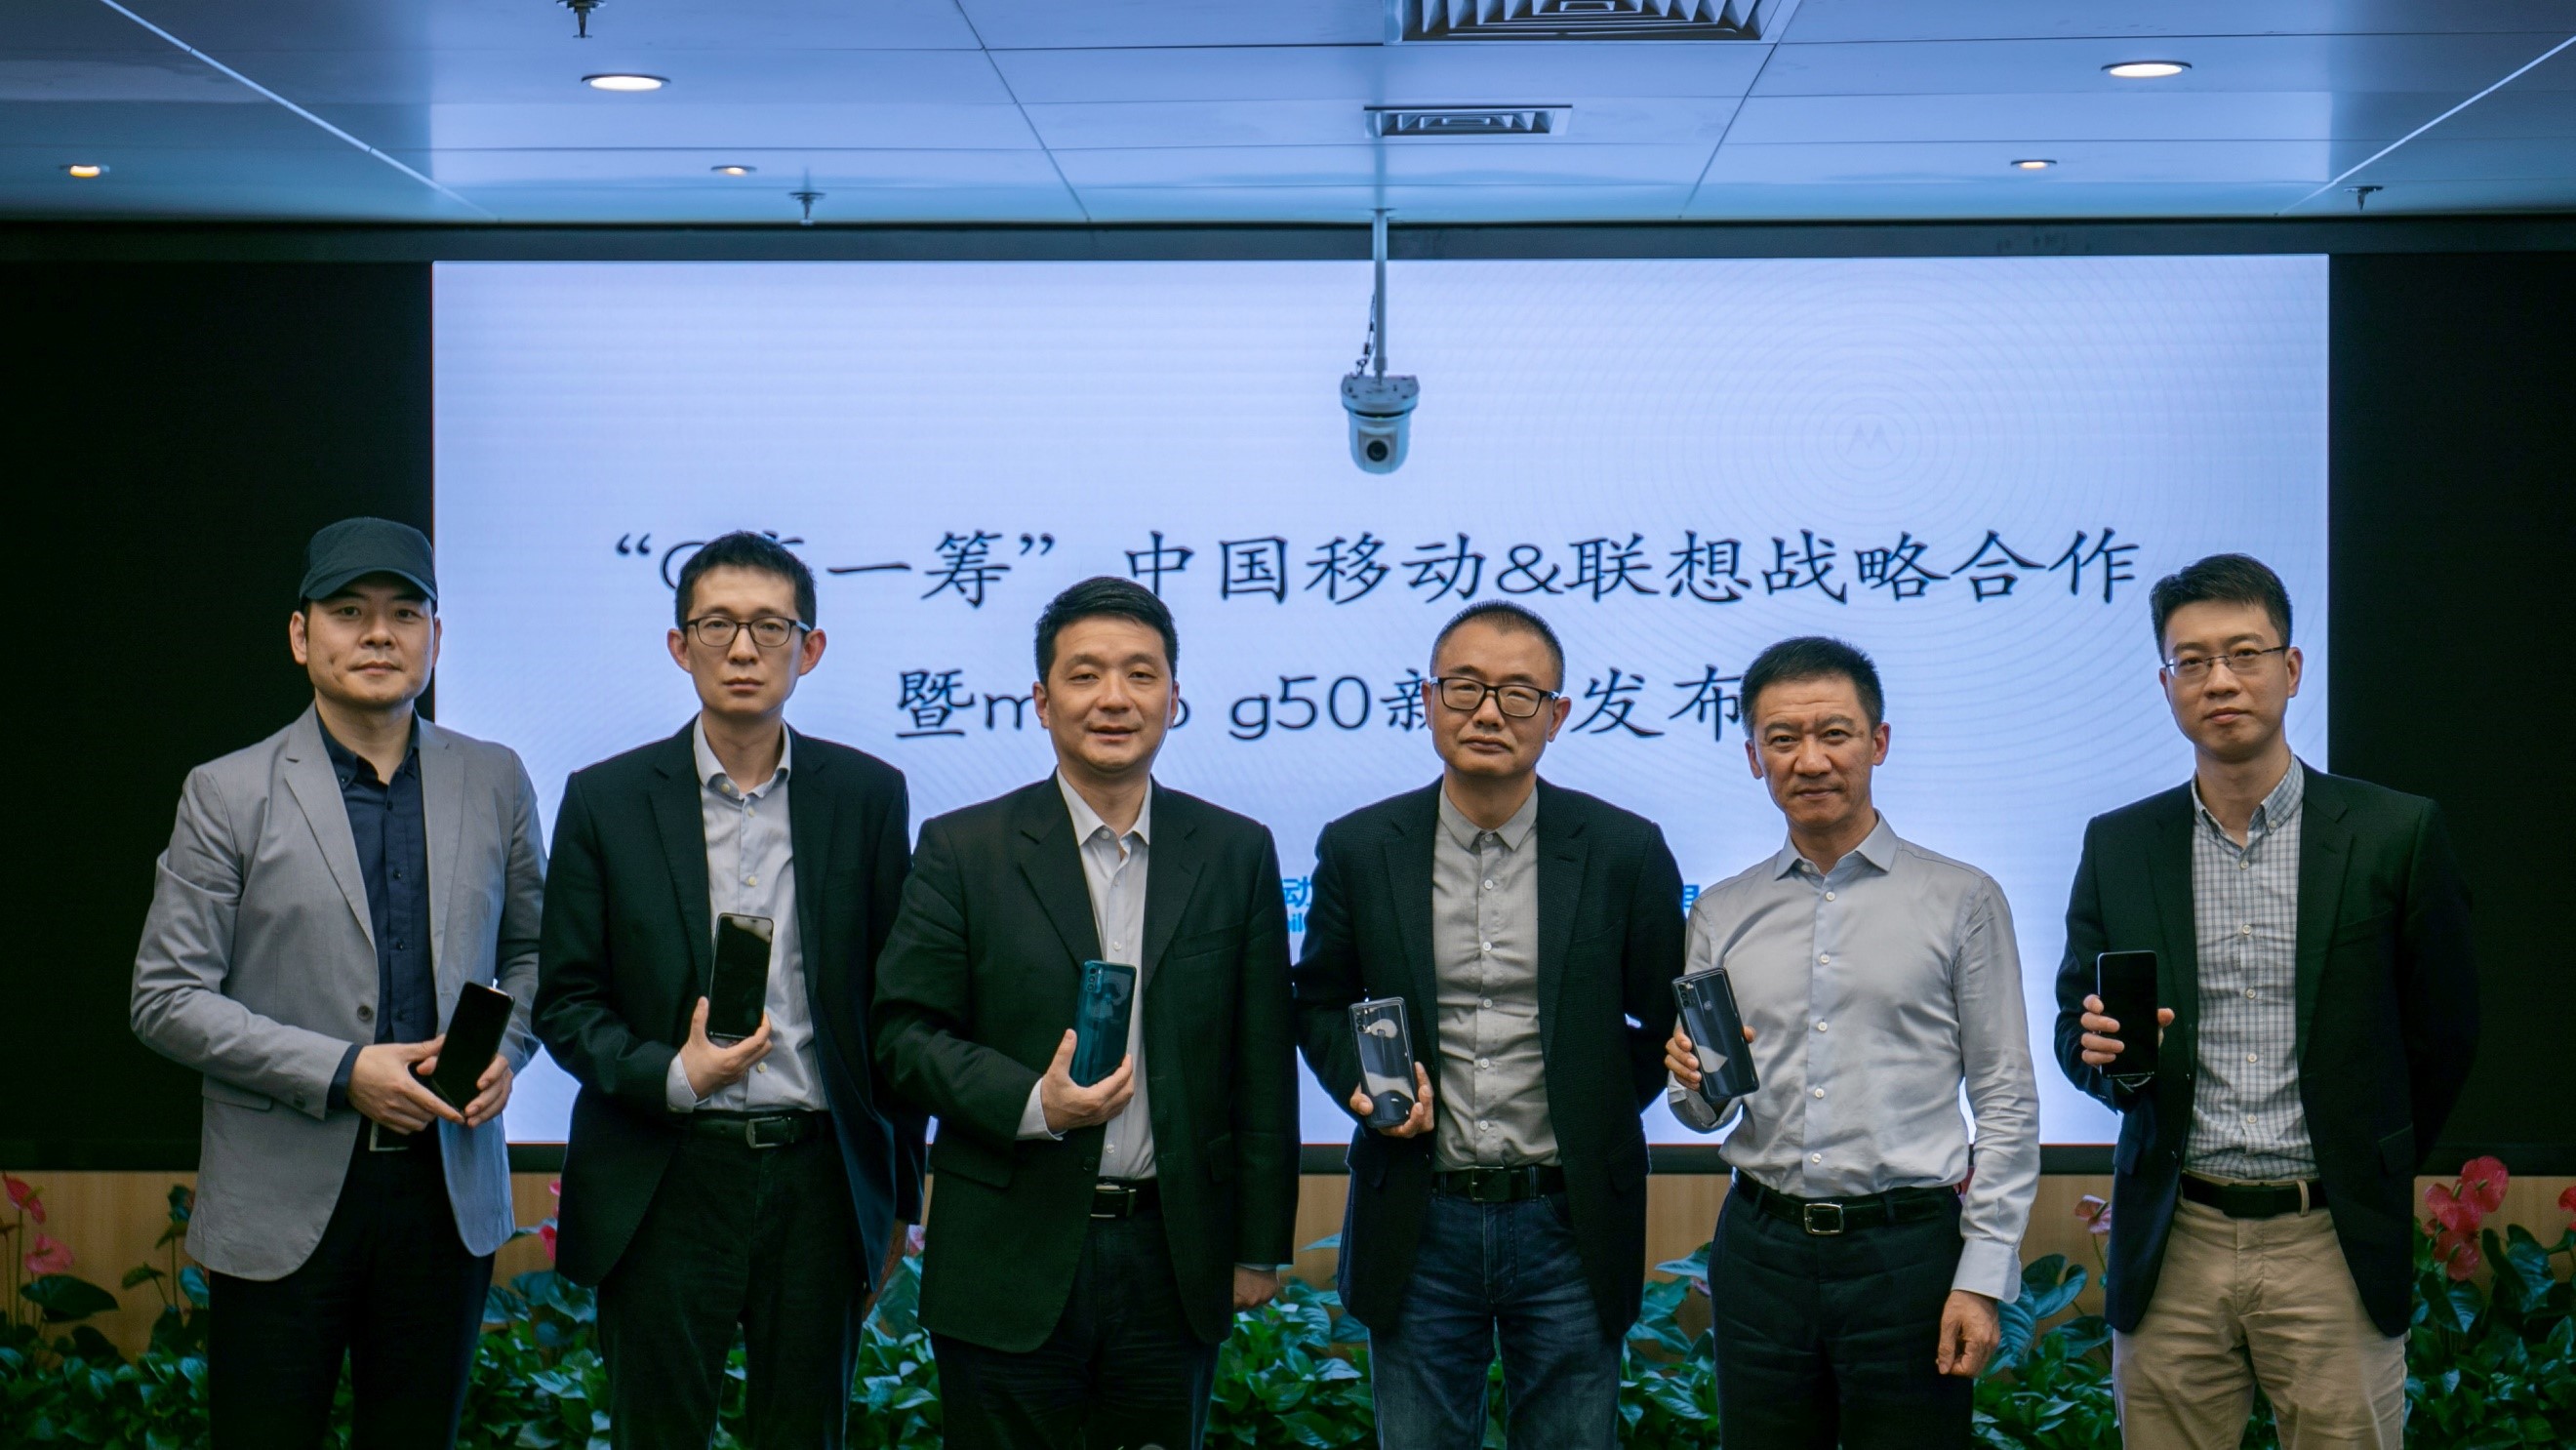 联想与中国移动联合推出motorola g50，打破5G普及瓶颈 智能公会